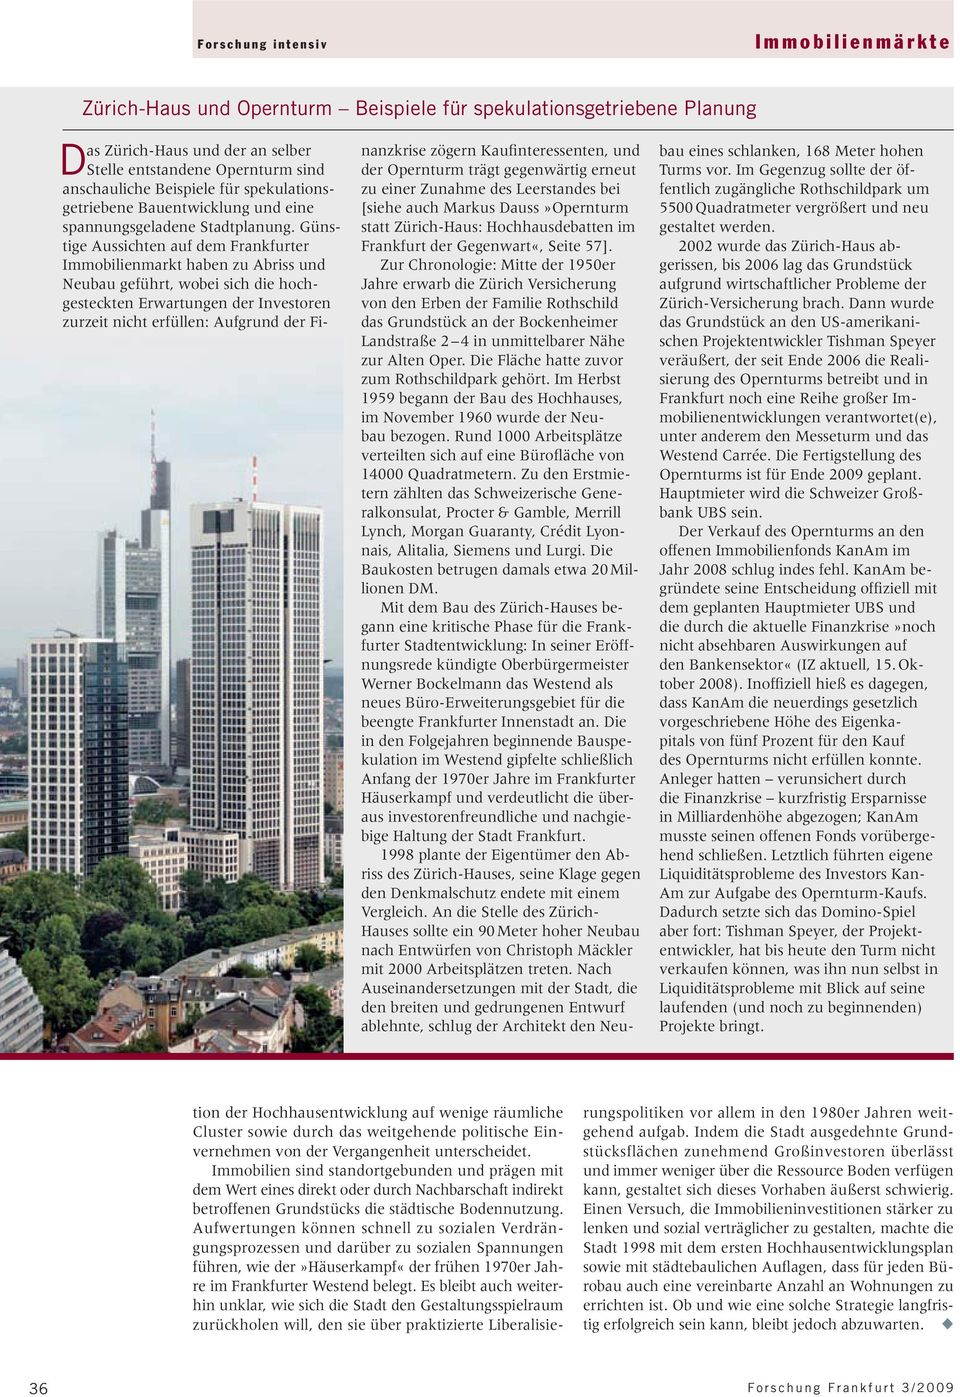 Günstige Aussichten auf dem Frankfurter Immobilienmarkt haben zu Abriss und Neubau geführt, wobei sich die hochgesteckten Erwartungen der Investoren zurzeit nicht erfüllen: Aufgrund der Finanzkrise